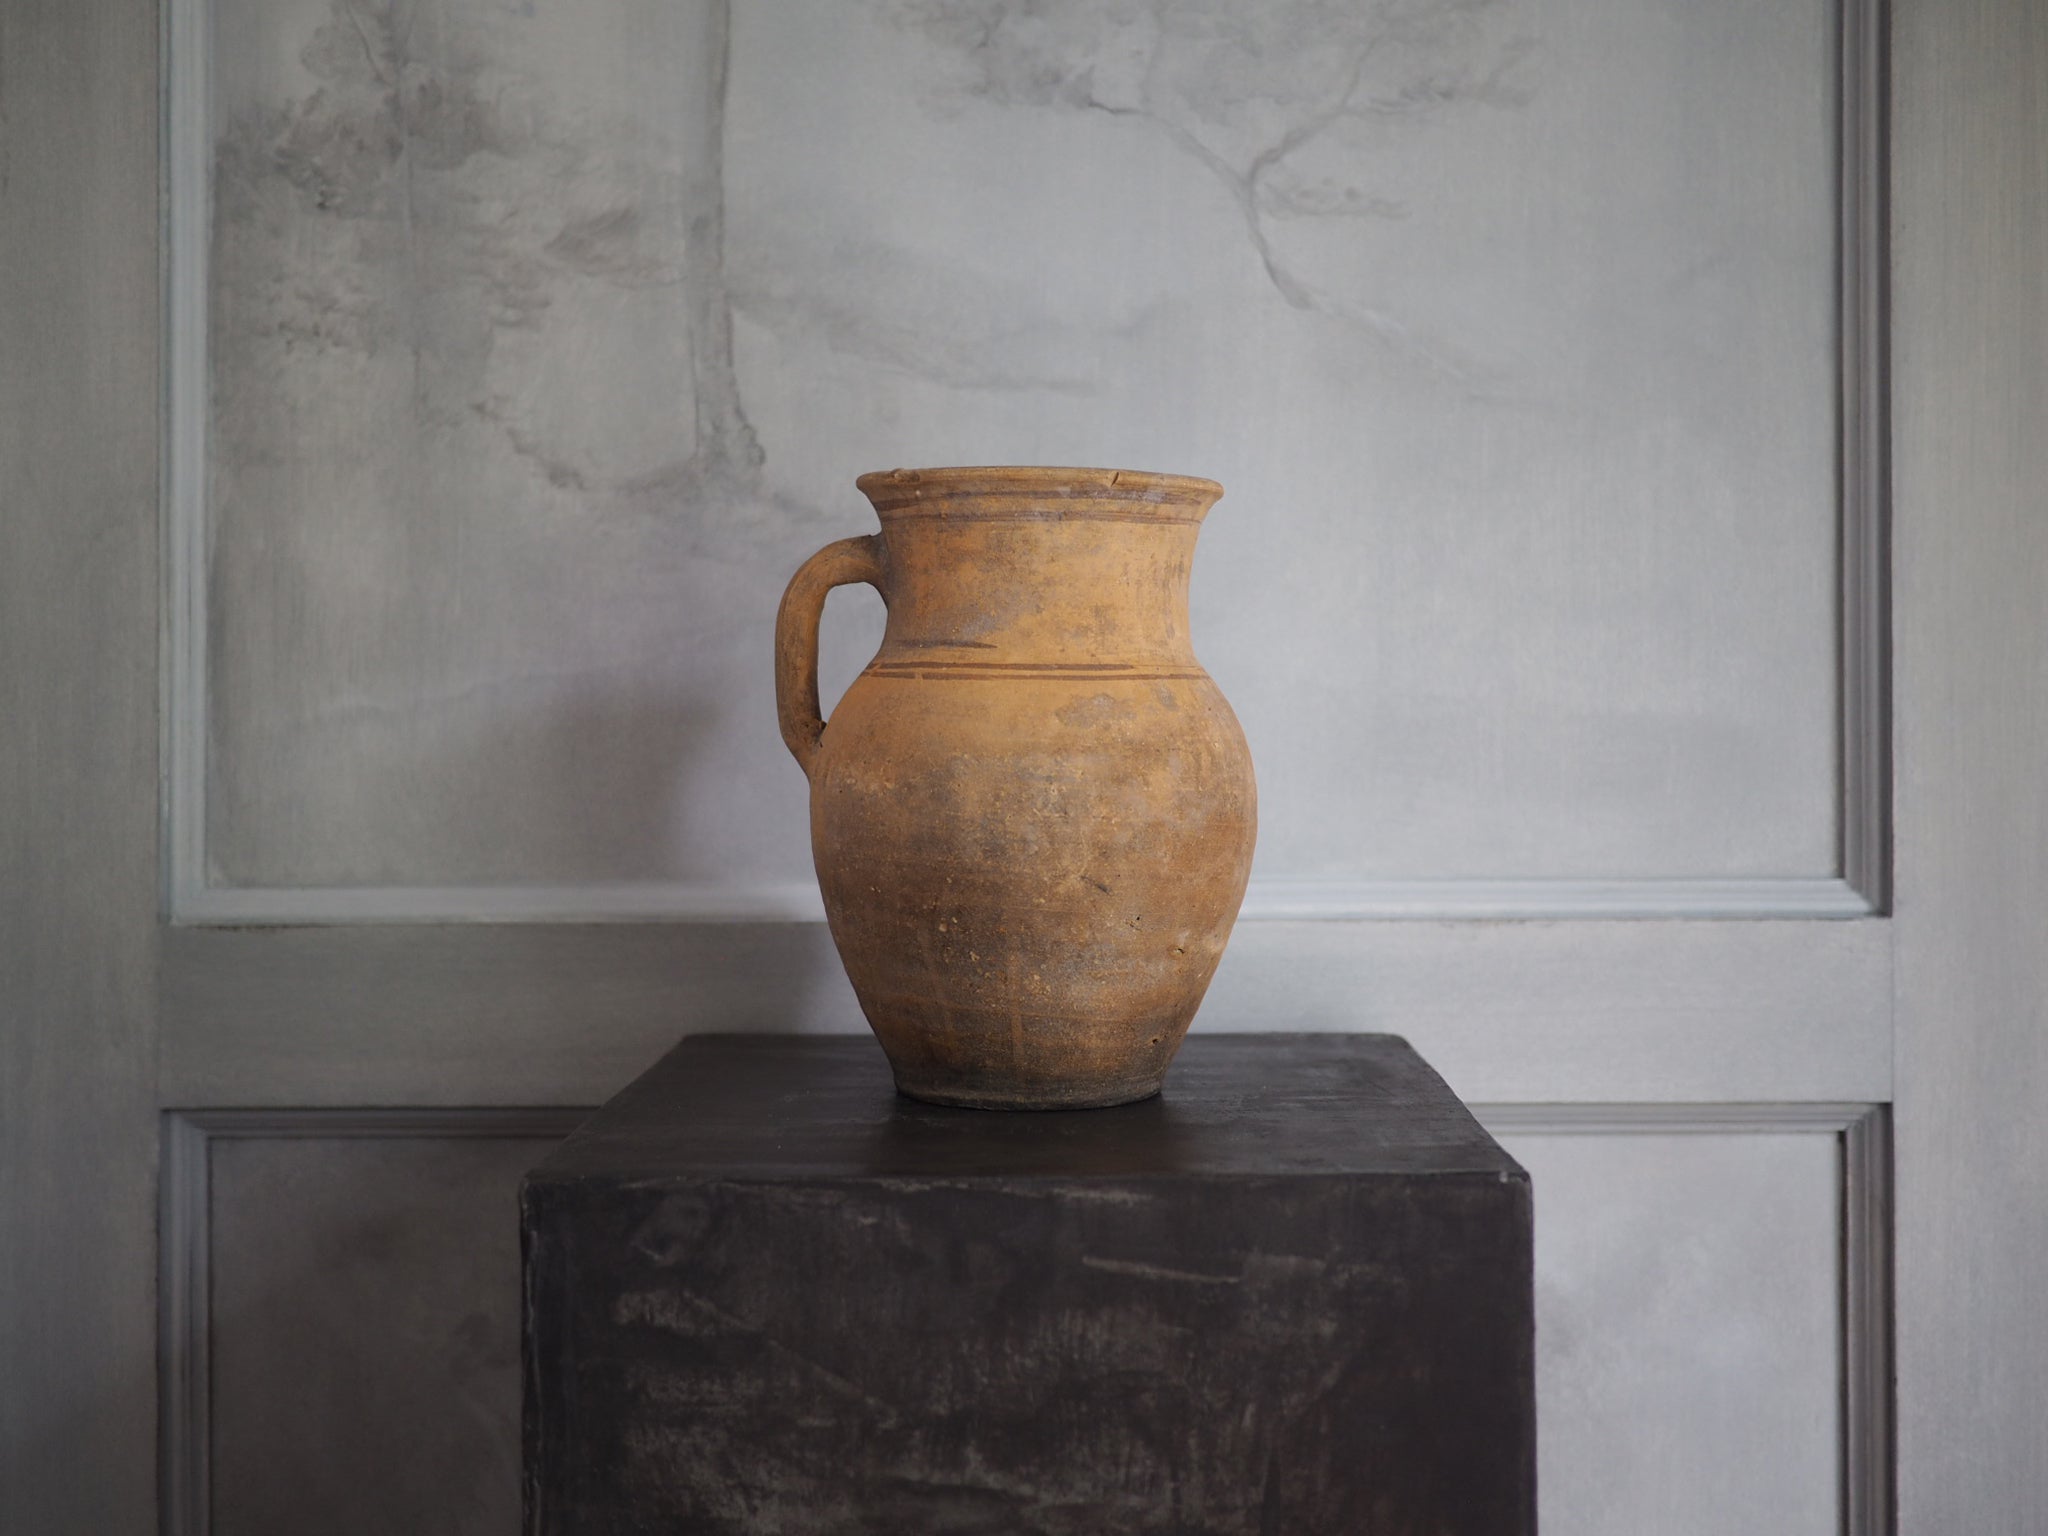 Antique Wabi Sabi Natural Clay Pot